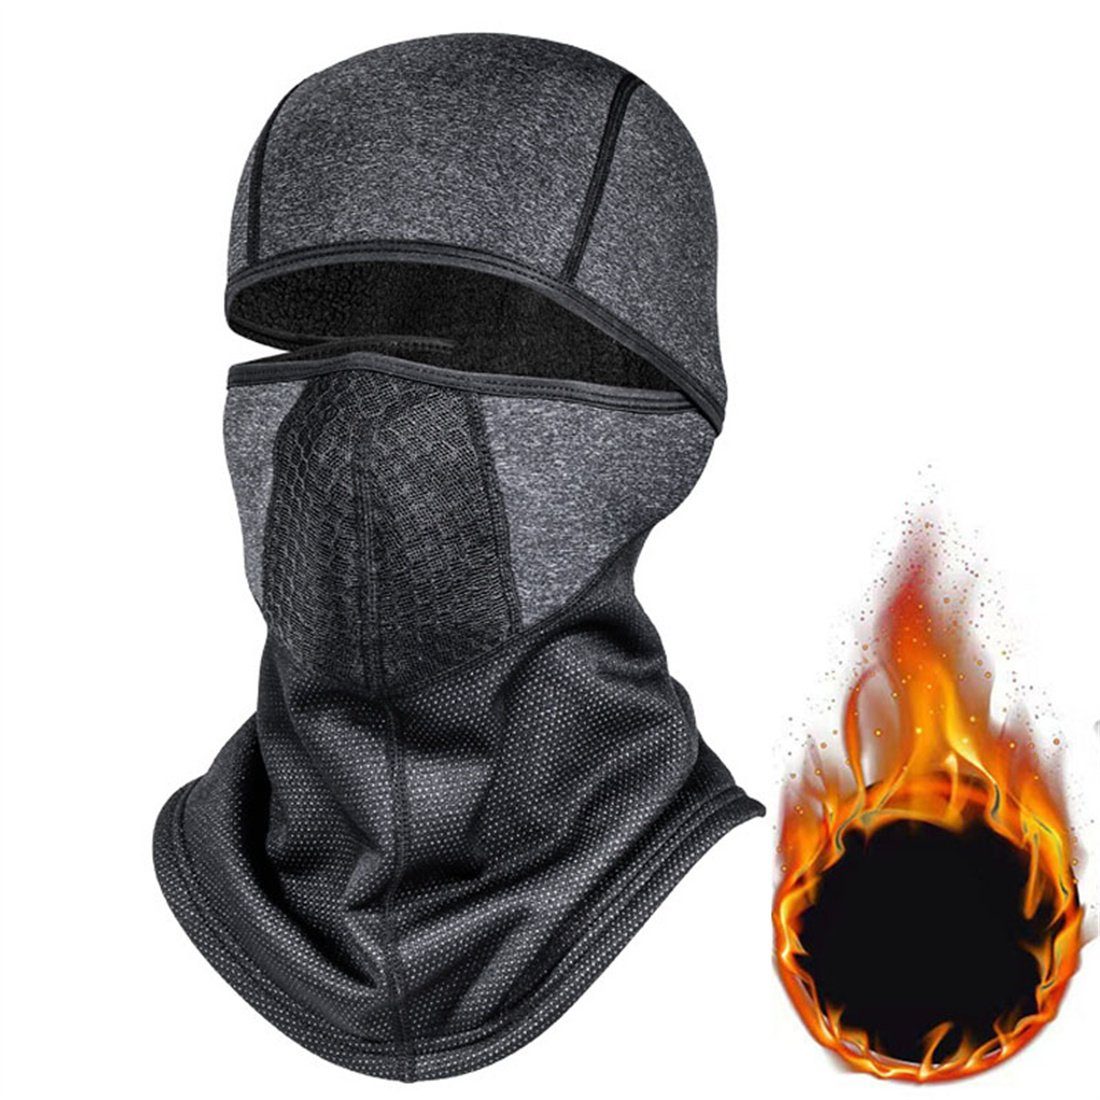 DÖRÖY Sturmhaube Winter-Ski-Maske, Halsschutz Outdoor-Radfahren unisex dunkelgrau Kopfbedeckung